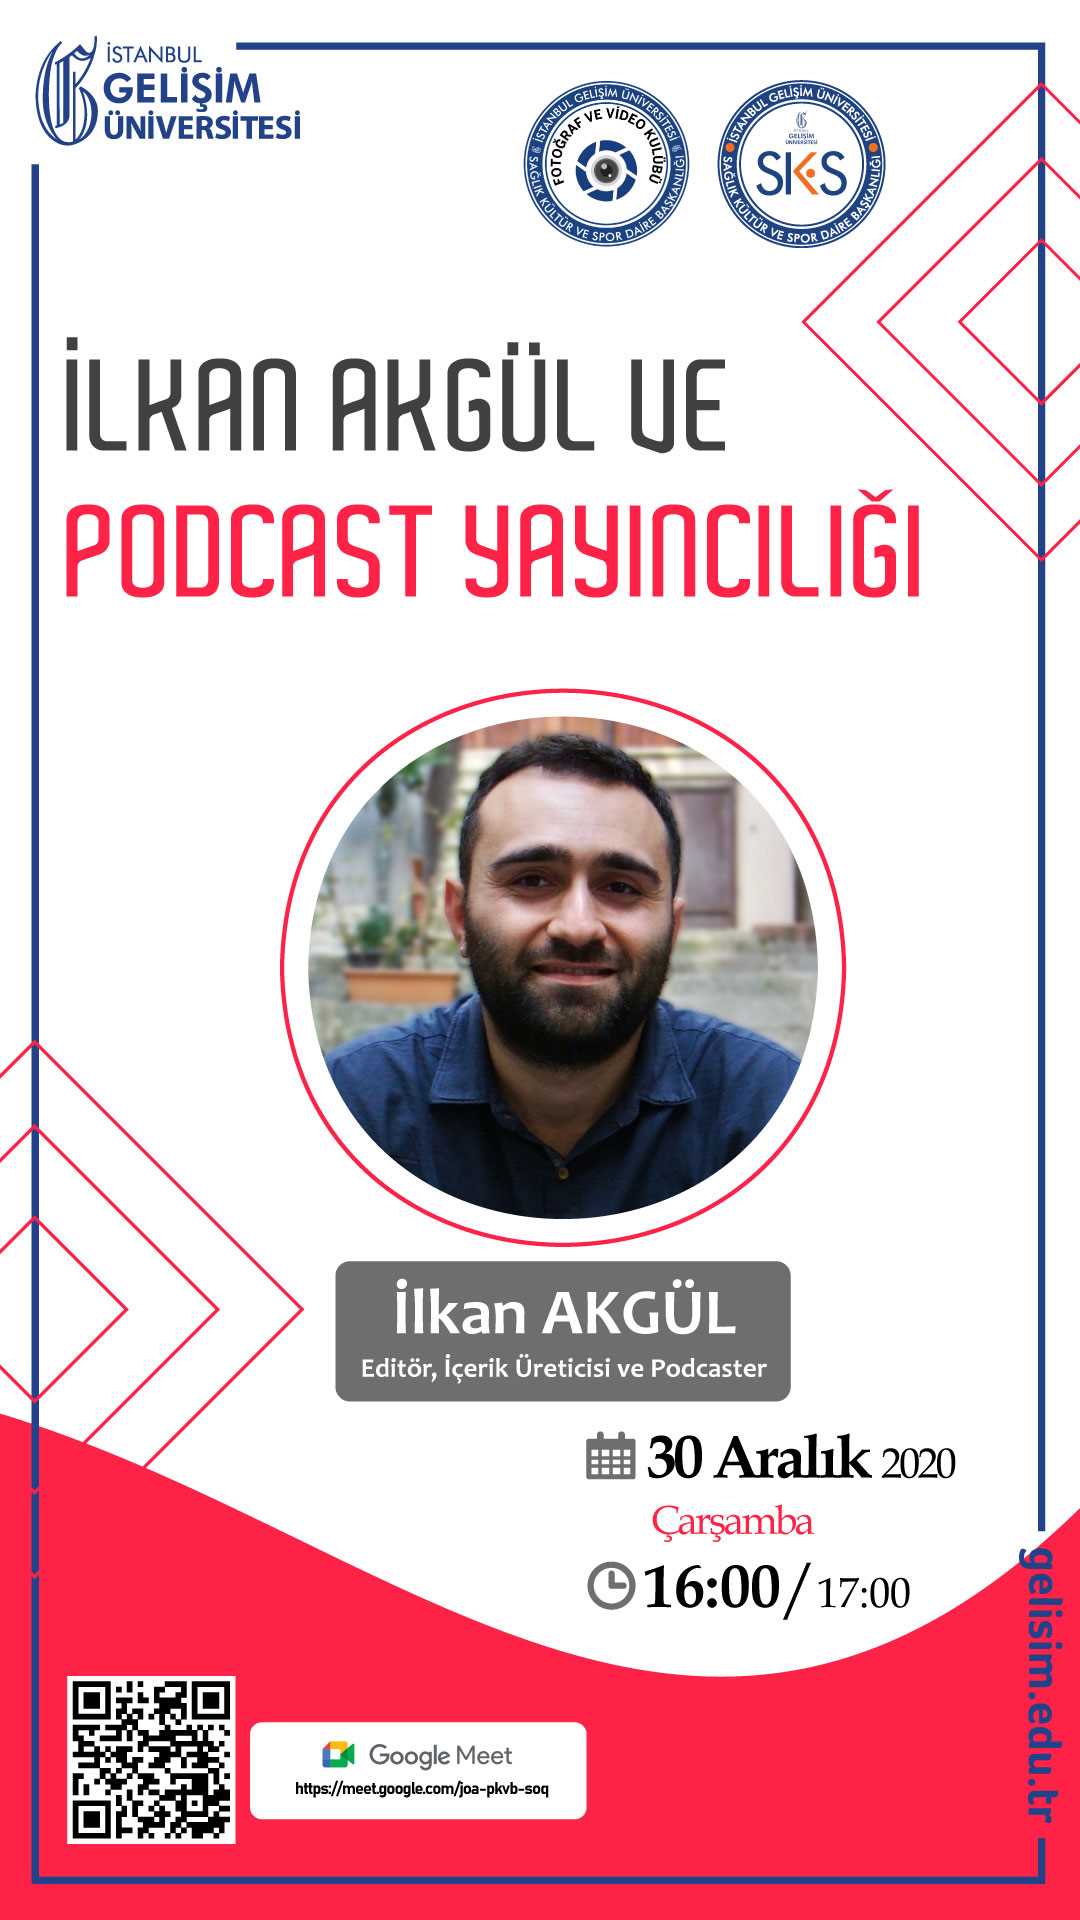 İlkan Akgül ve Podcast Yayıncılığı